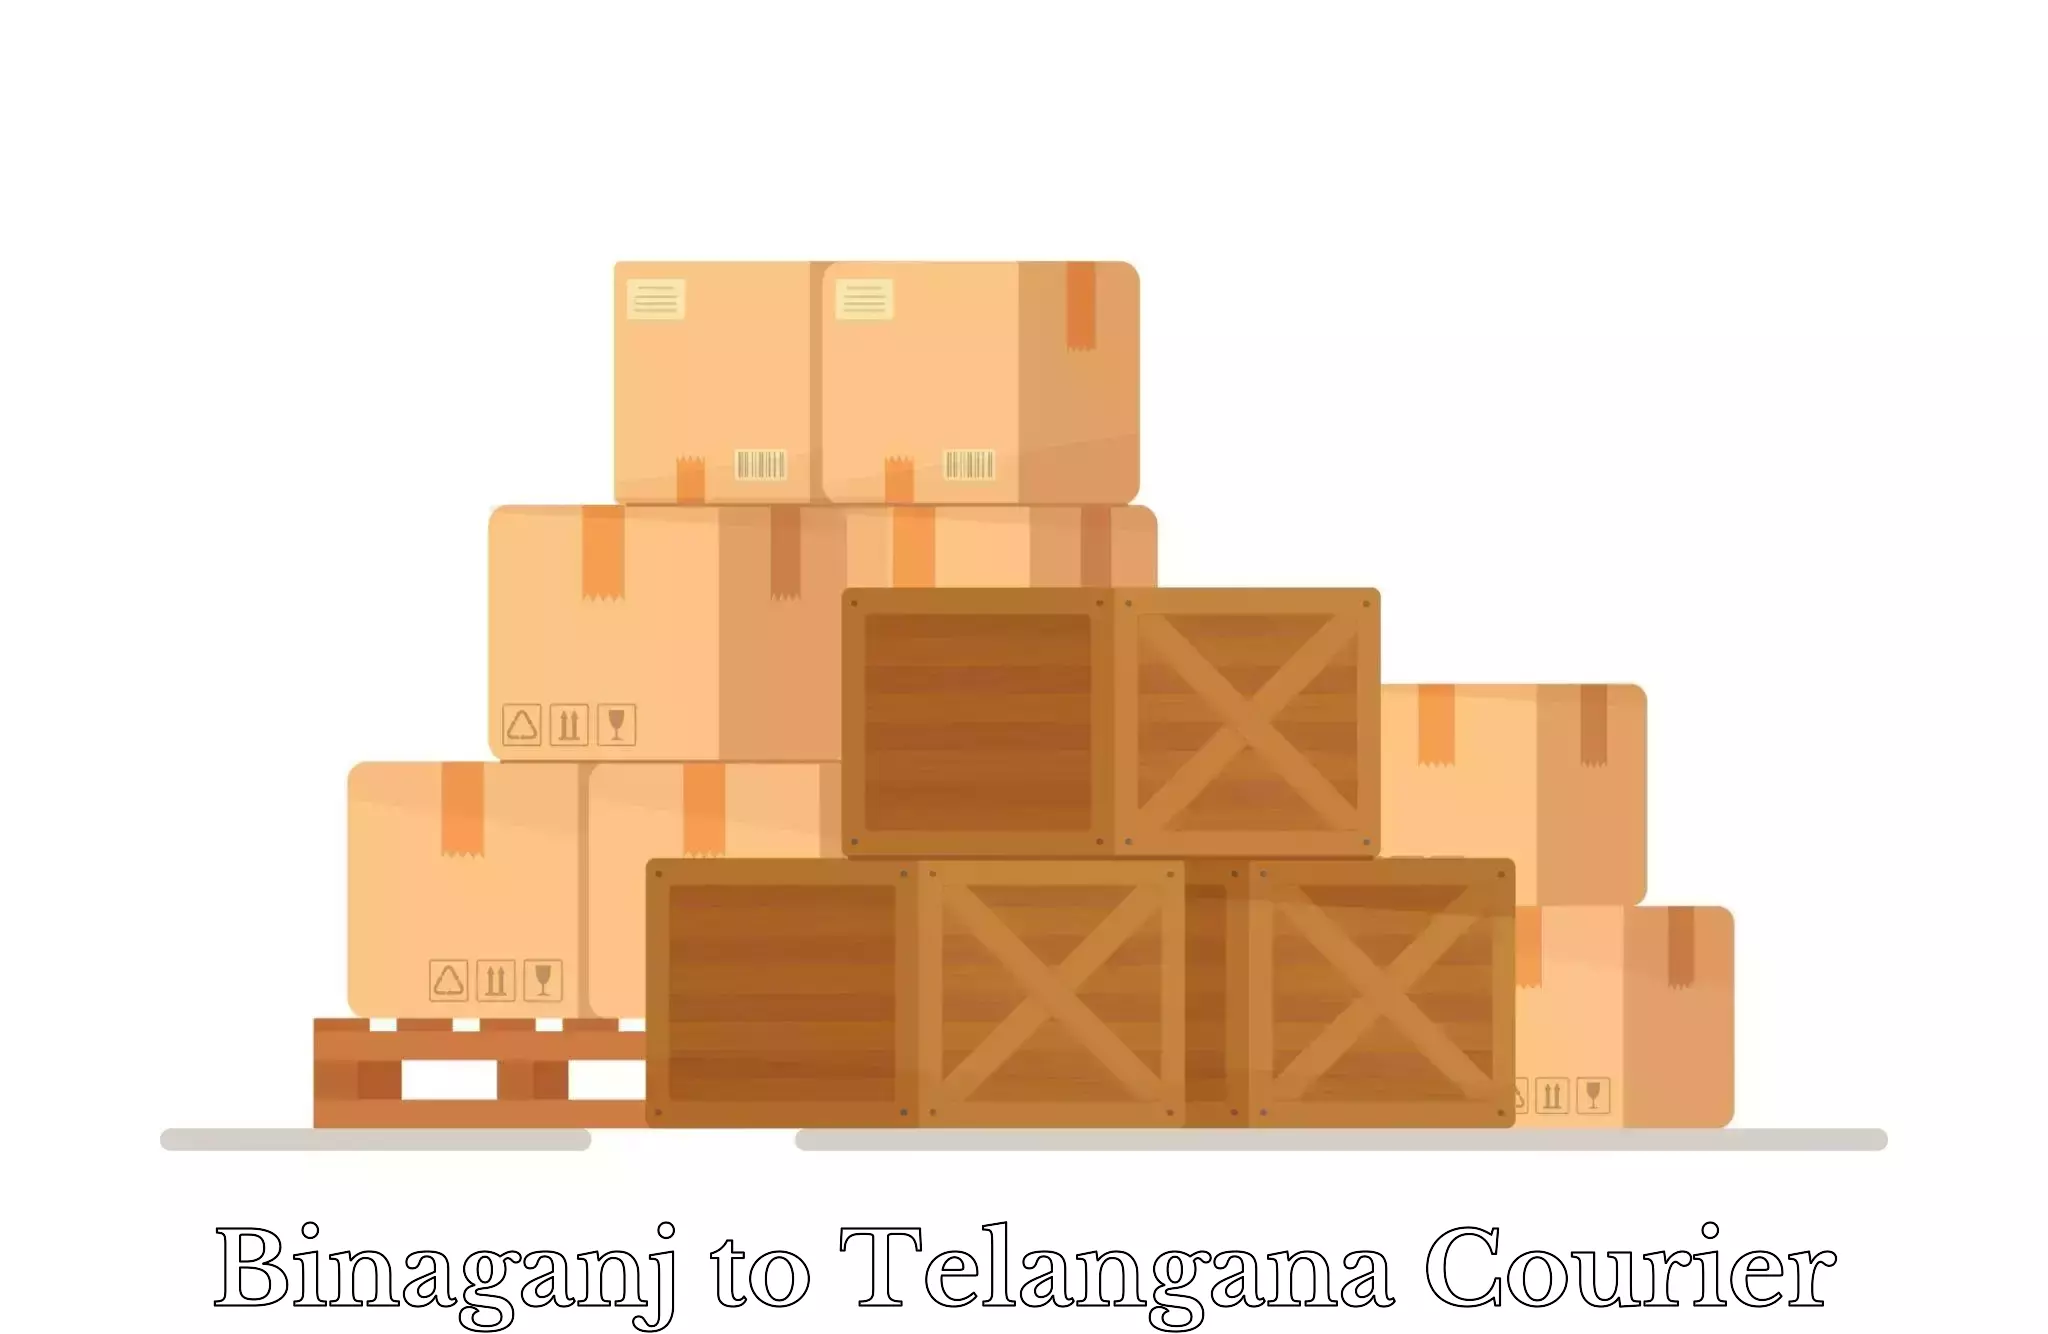 Single item baggage courier Binaganj to Jainad